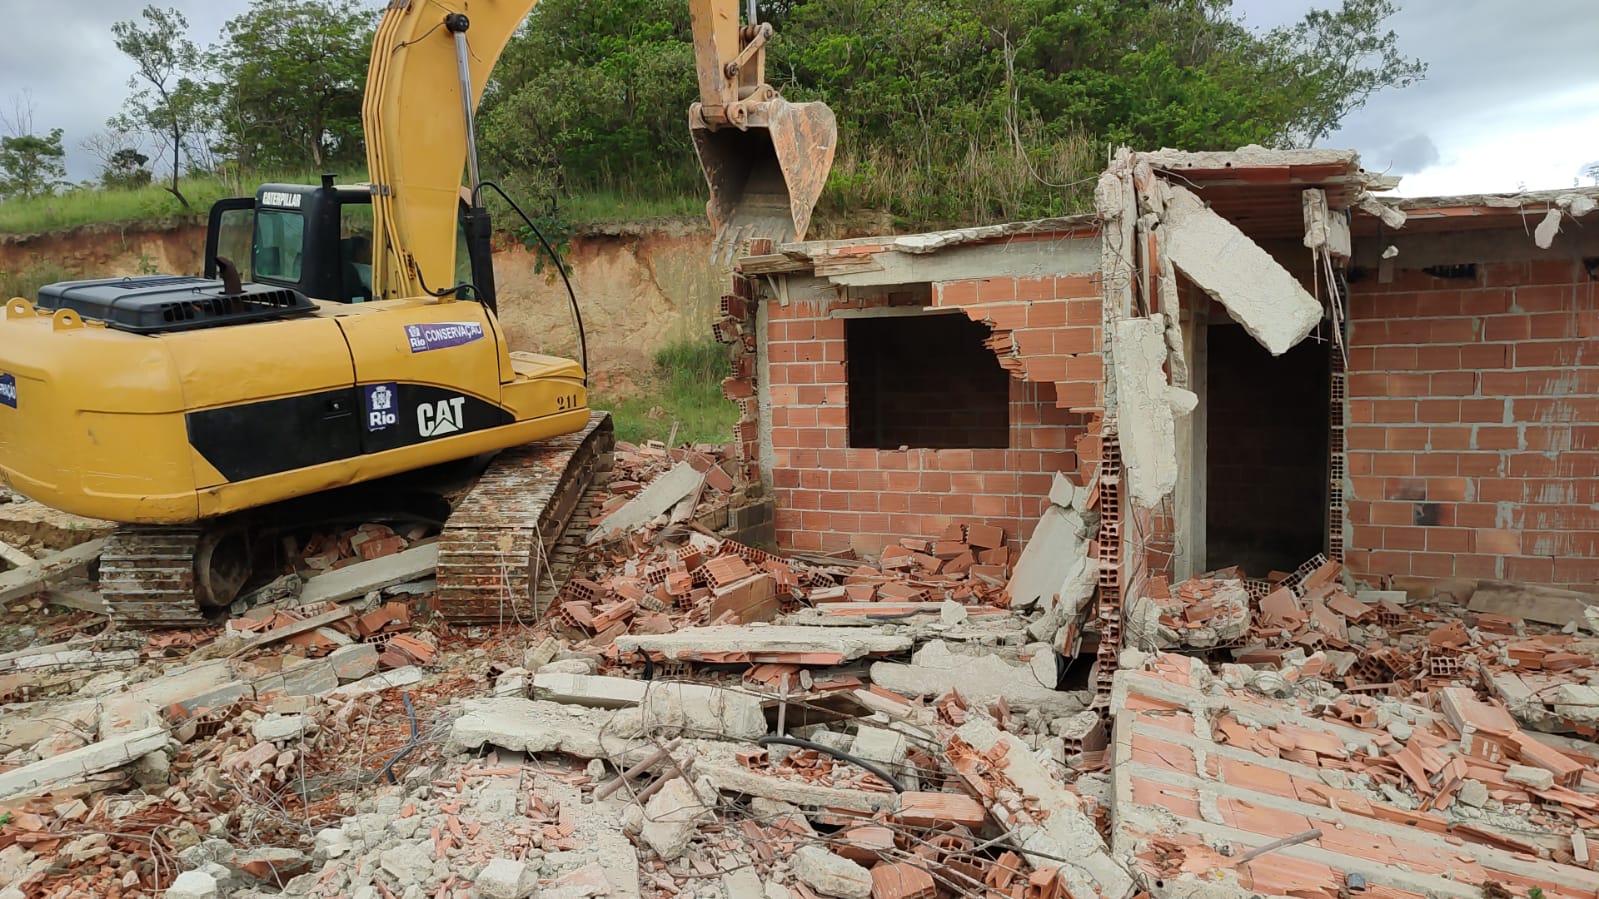 SEOP realiza demolição e 11 construções irregulares em Inhoaíba, na Zona Oeste do Rio (Foto: Divulgação)